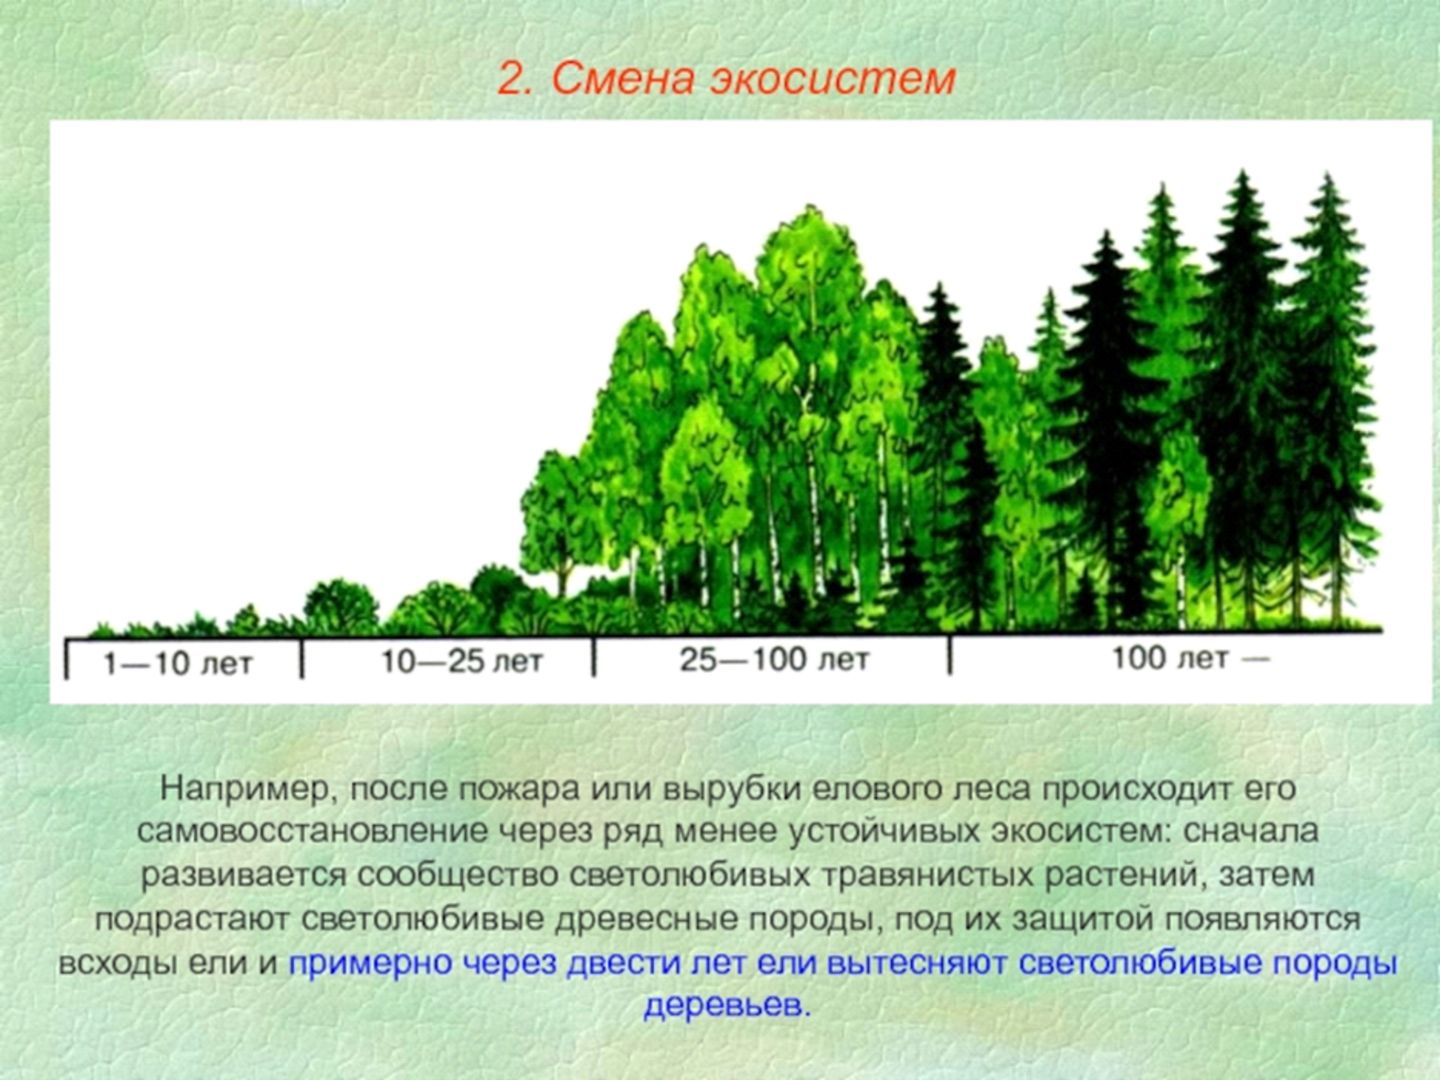 Изм лес. Смена экосистем. Изменение экосистемы. Смена биогеоценоза. Этапы смены экосистем.